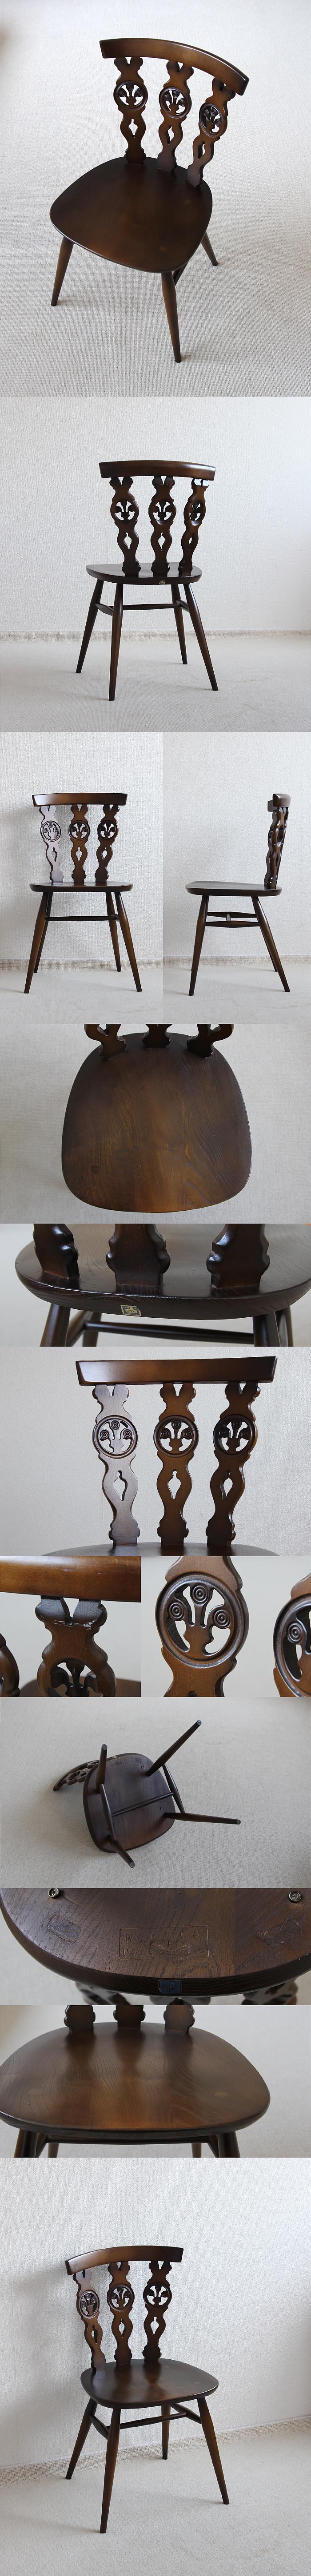 イギリス ヴィンテージ アーコールチェア ERCOL 木製椅子 アンティーク 家具「シスルバックチェア」V-897